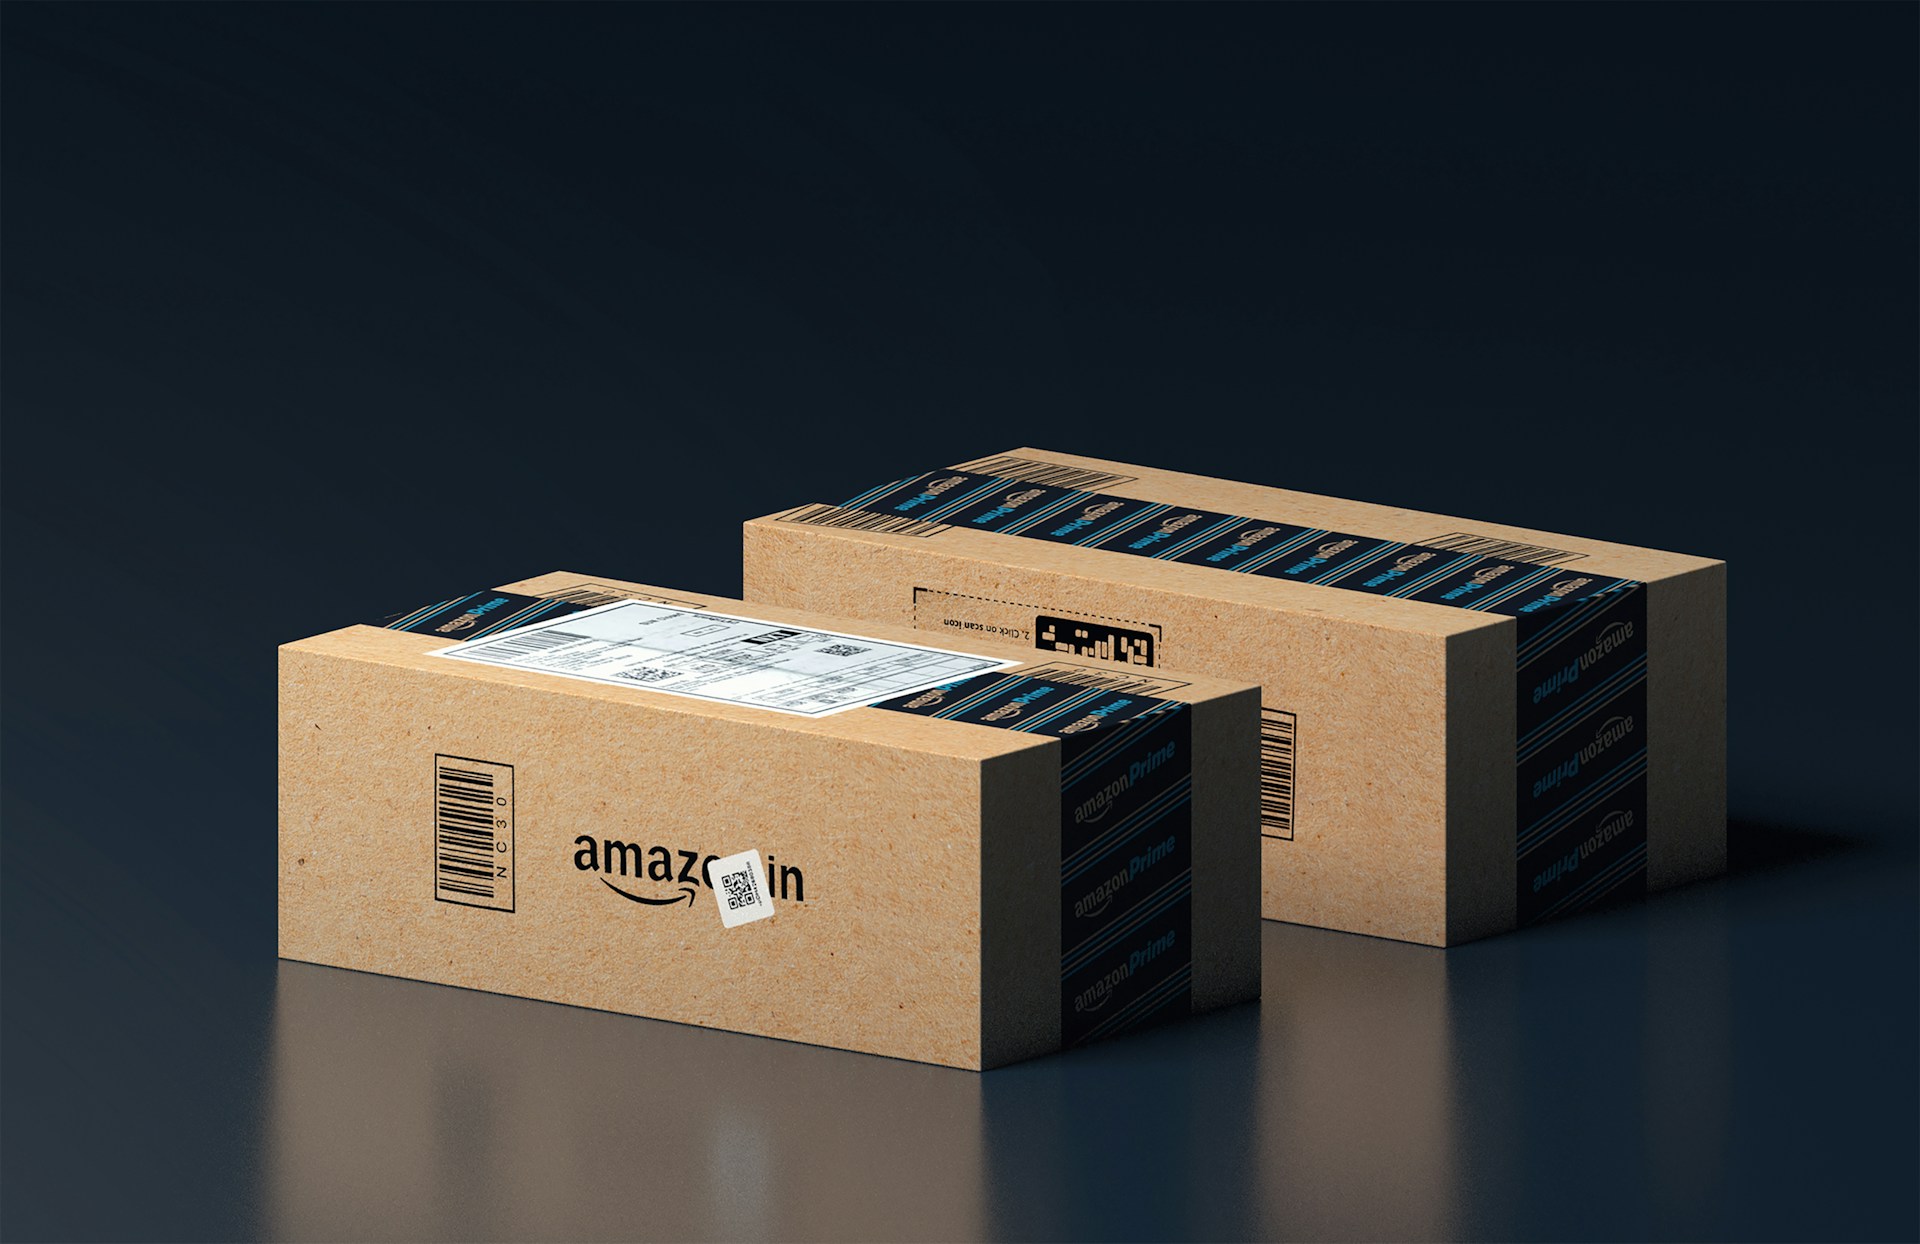 Amazon Prime boxes.